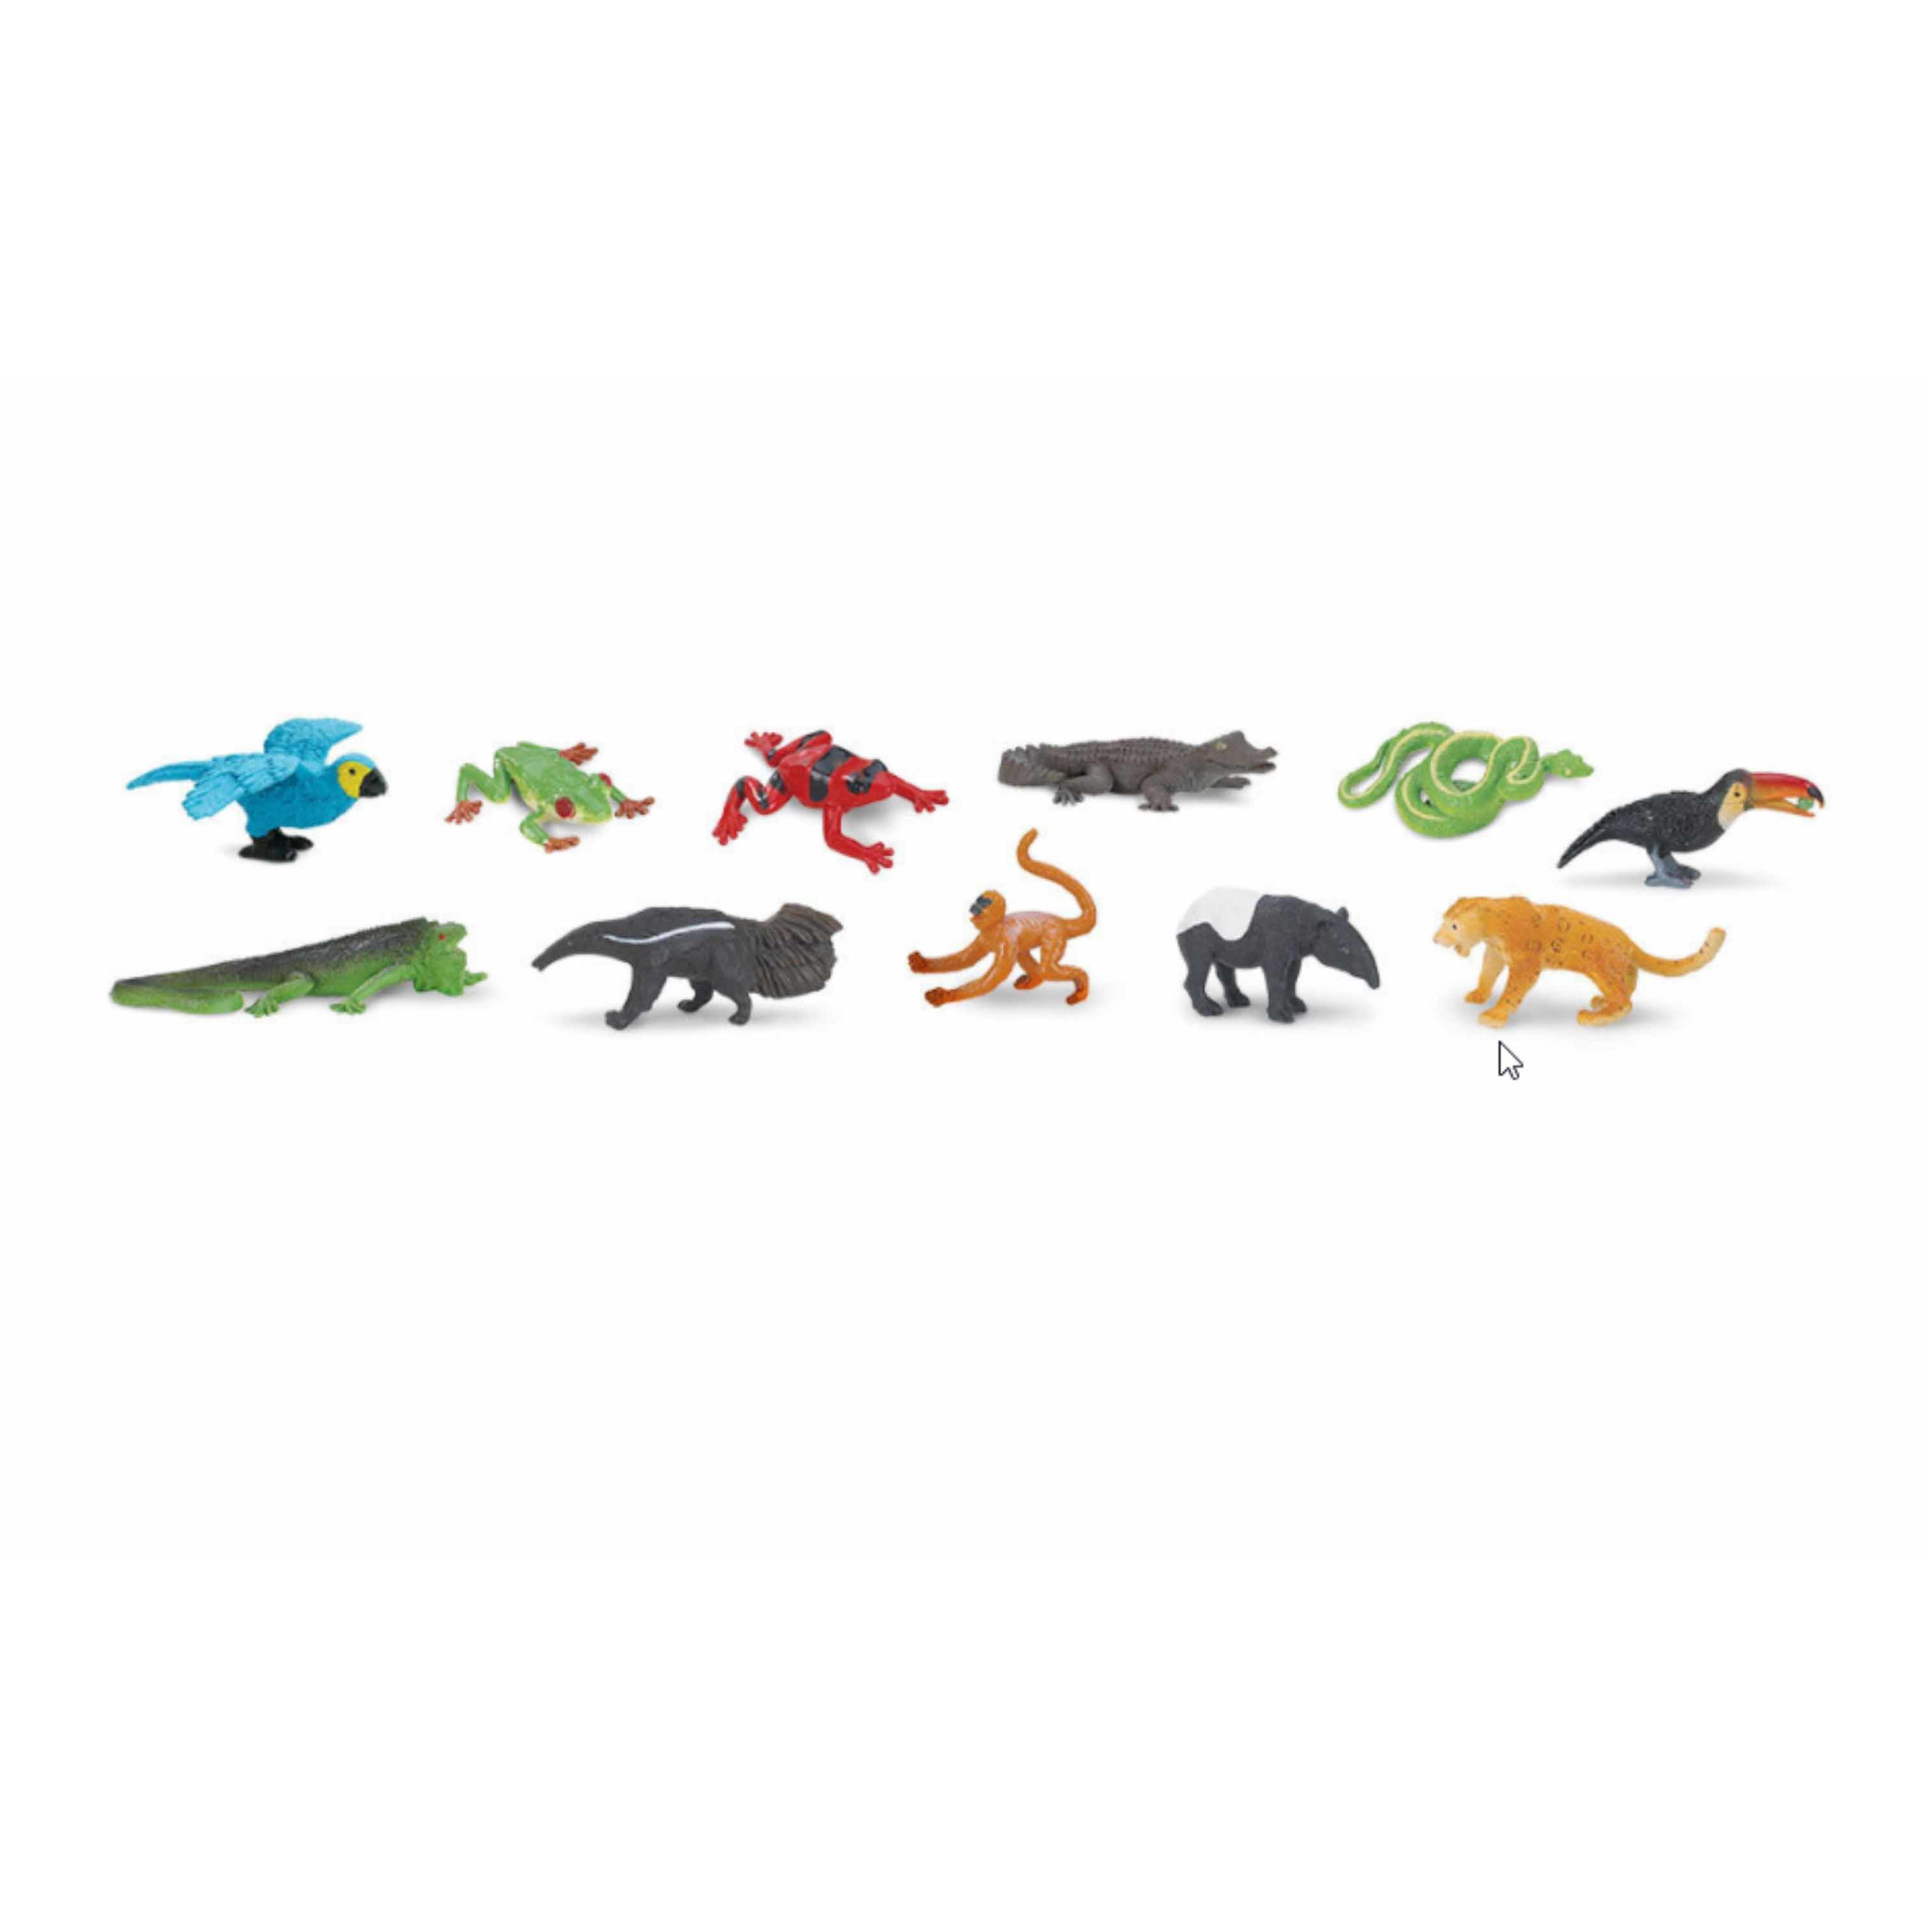 Plastic speelgoed dieren figuren oerwoud wilde dieren 11 stuks -